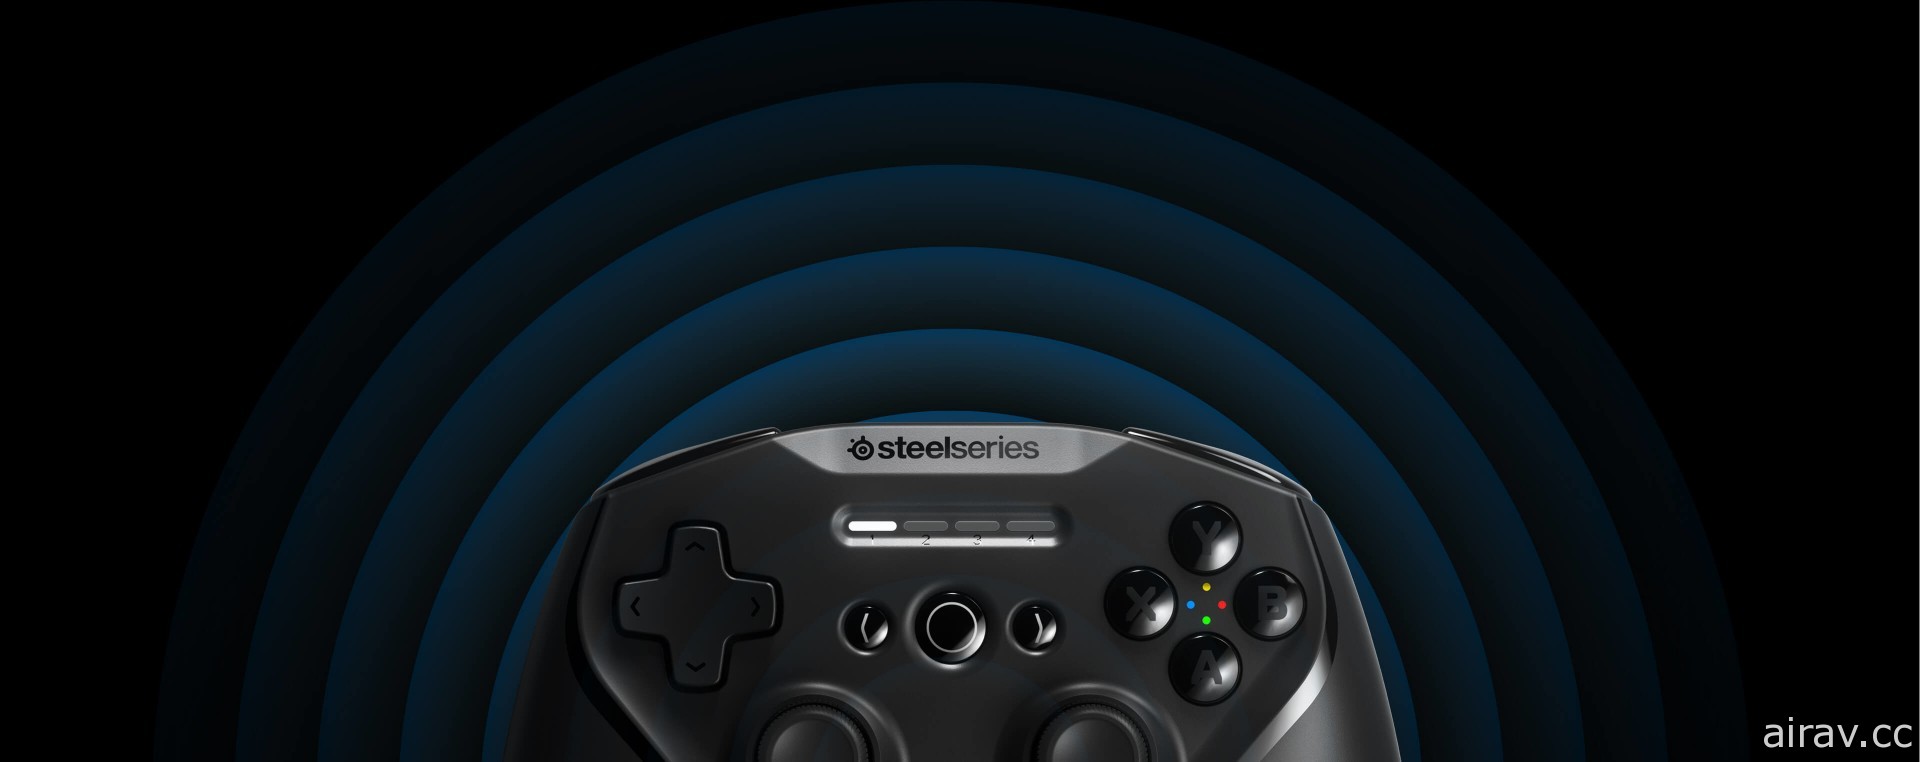 SteelSeries 推出 Aerox 系列電競滑鼠及無線遊戲控制器 Stratus+